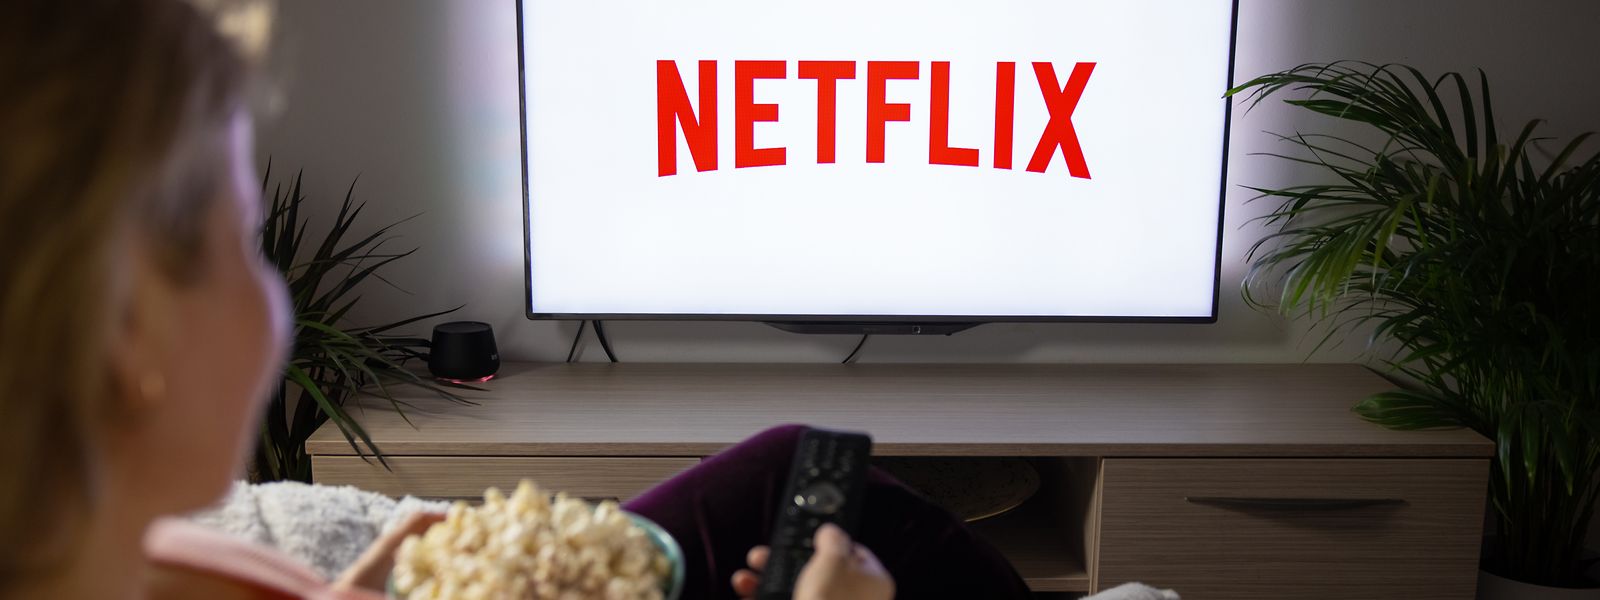 Avec une offre actuellement proposée à 8,99 euros pour la version standard, Netflix augmentera prochainement ses tarifs en Europe suite à ses dernières annonces officielles.